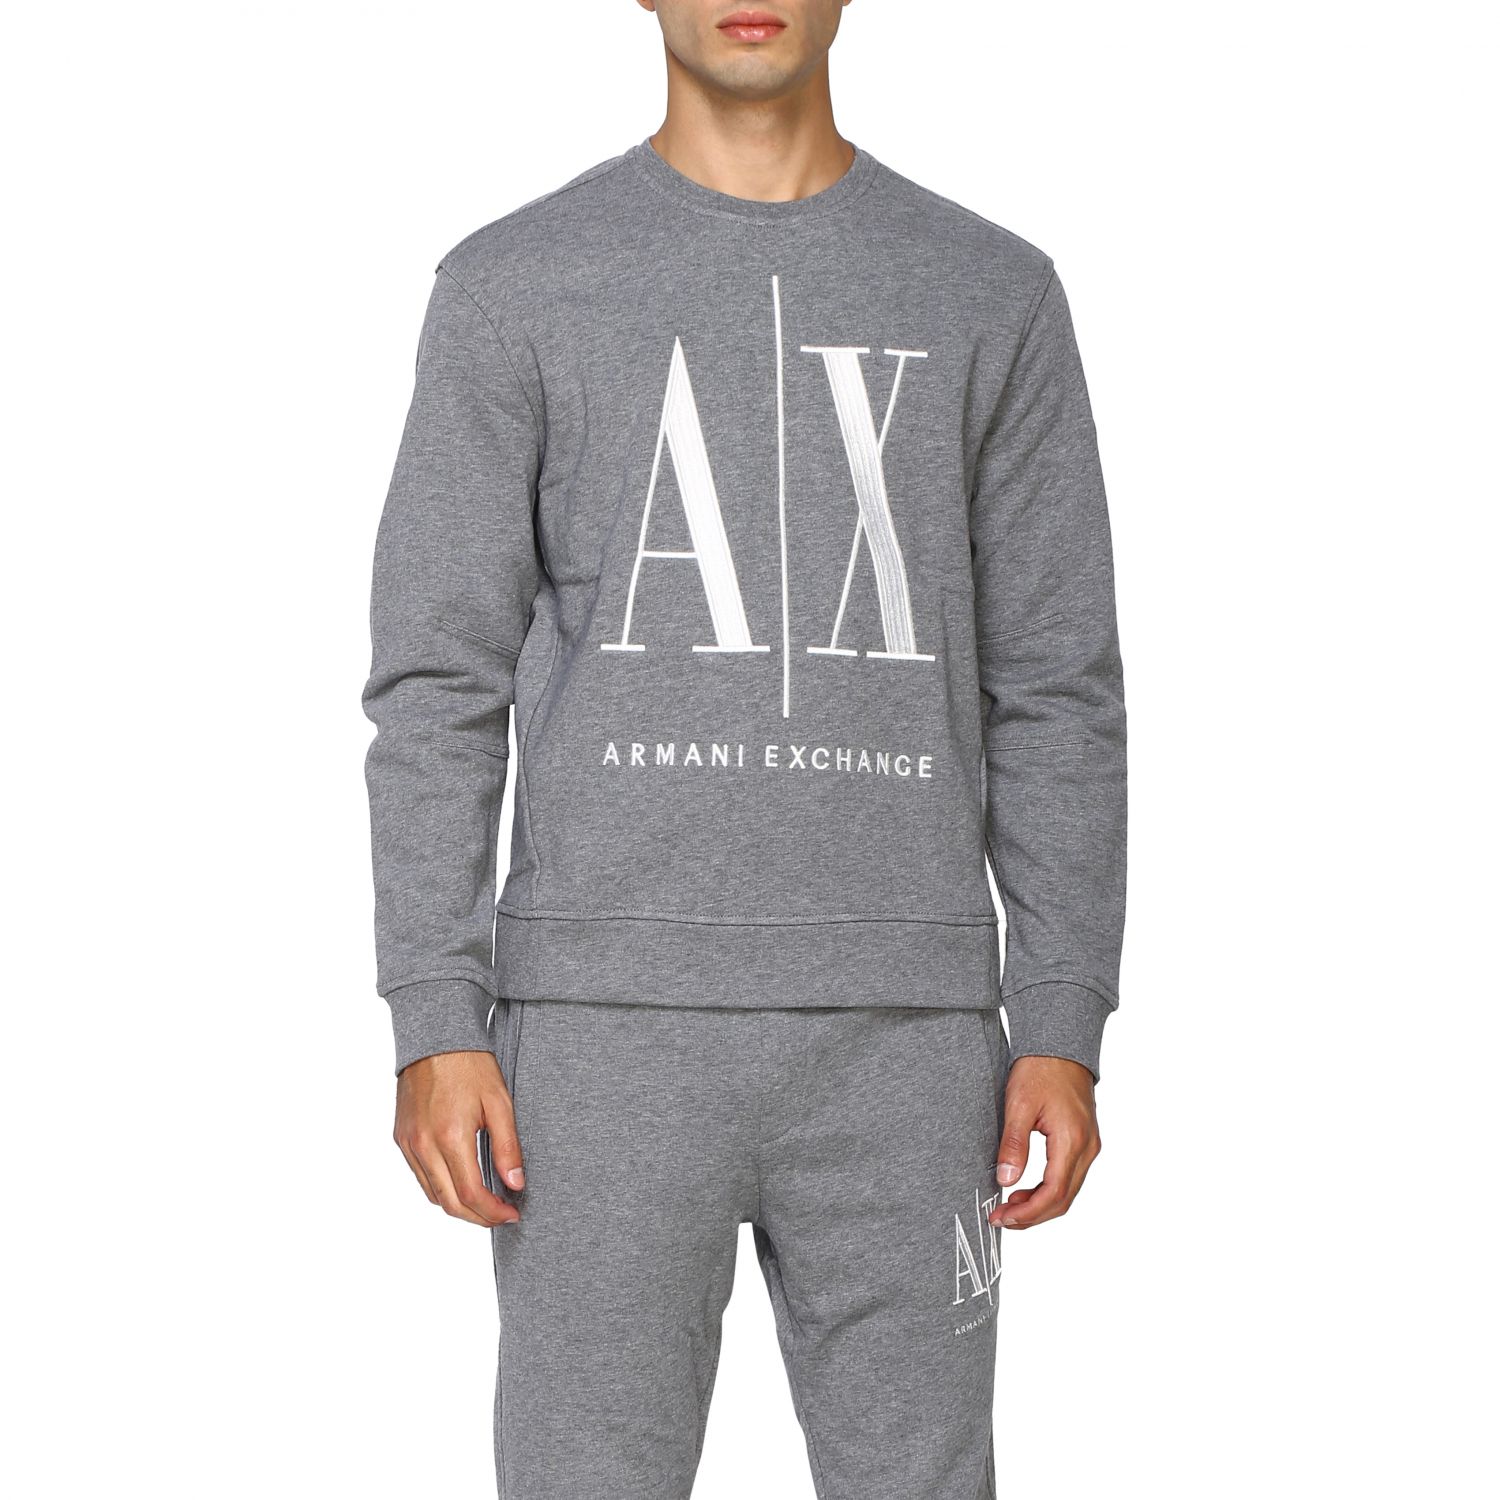 armani exchange grey sweatshirt